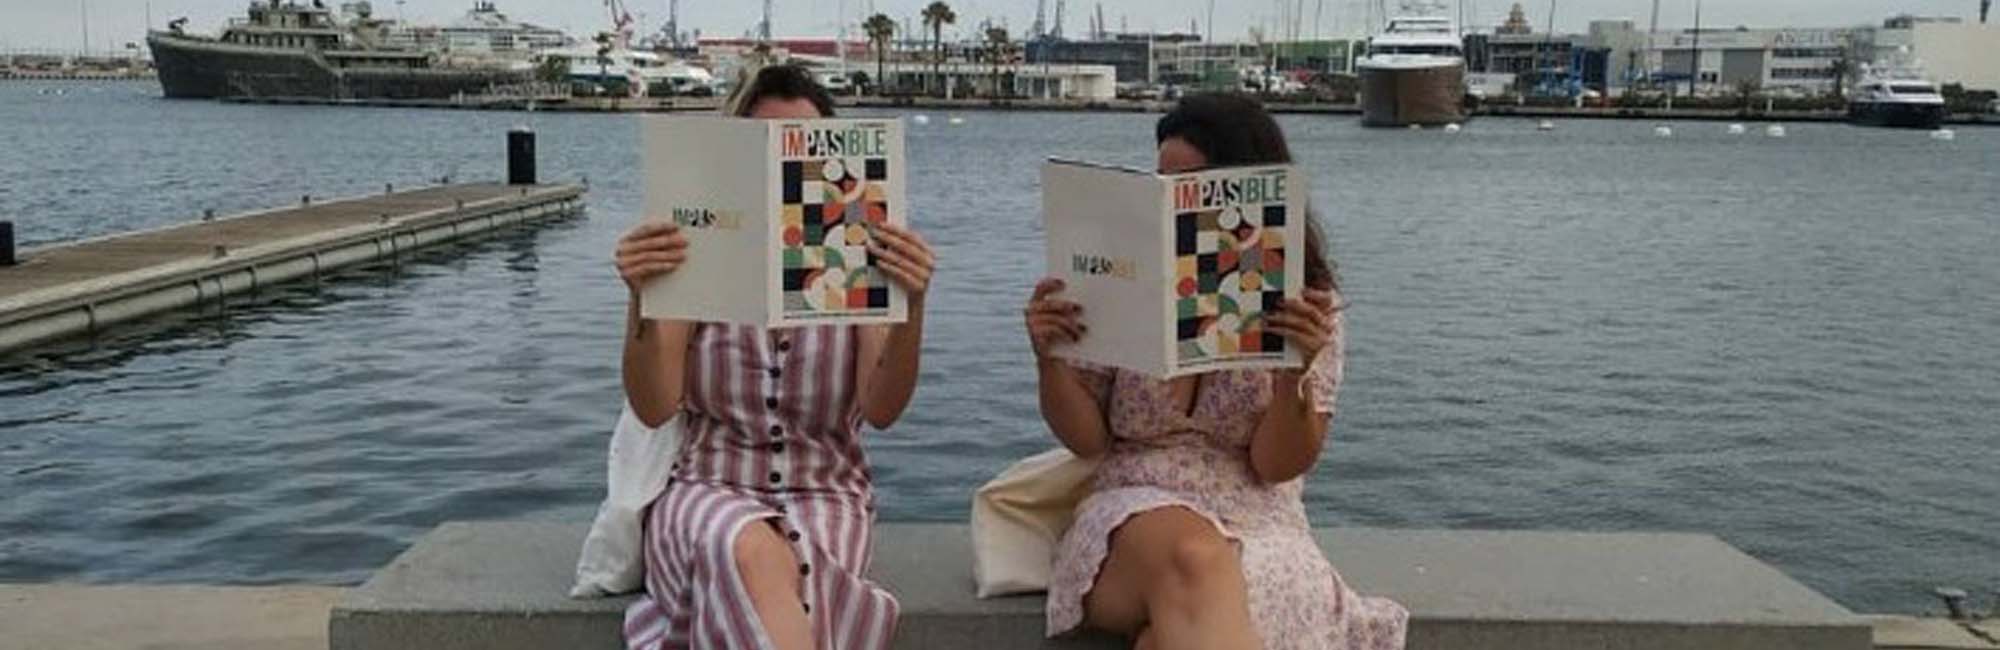 Dos mujeres sentadas leyendo una revista. 